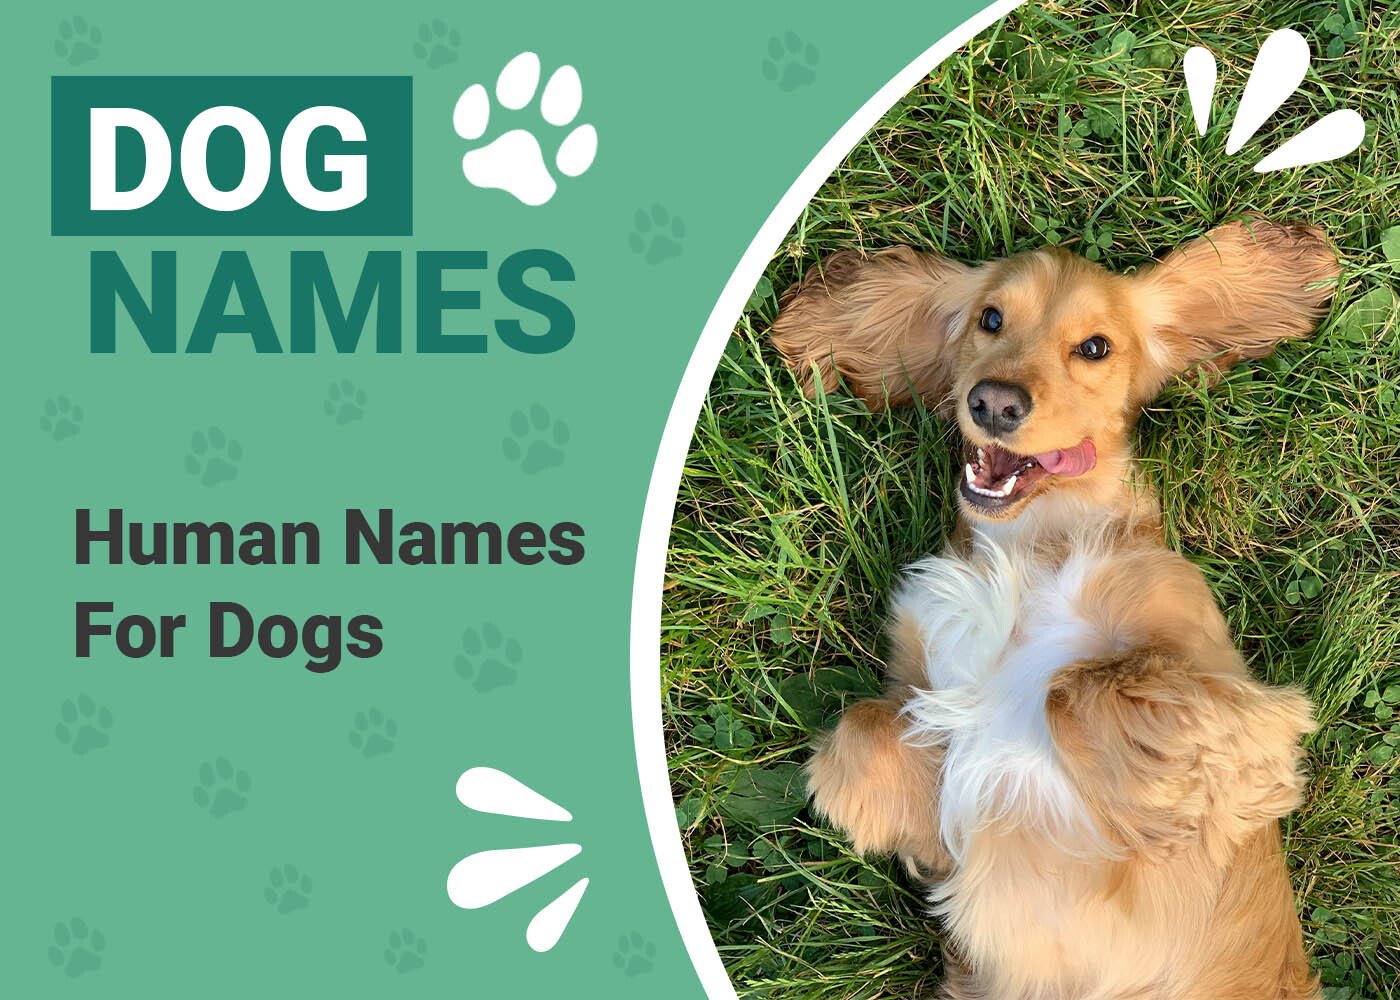 Human Names for Dog